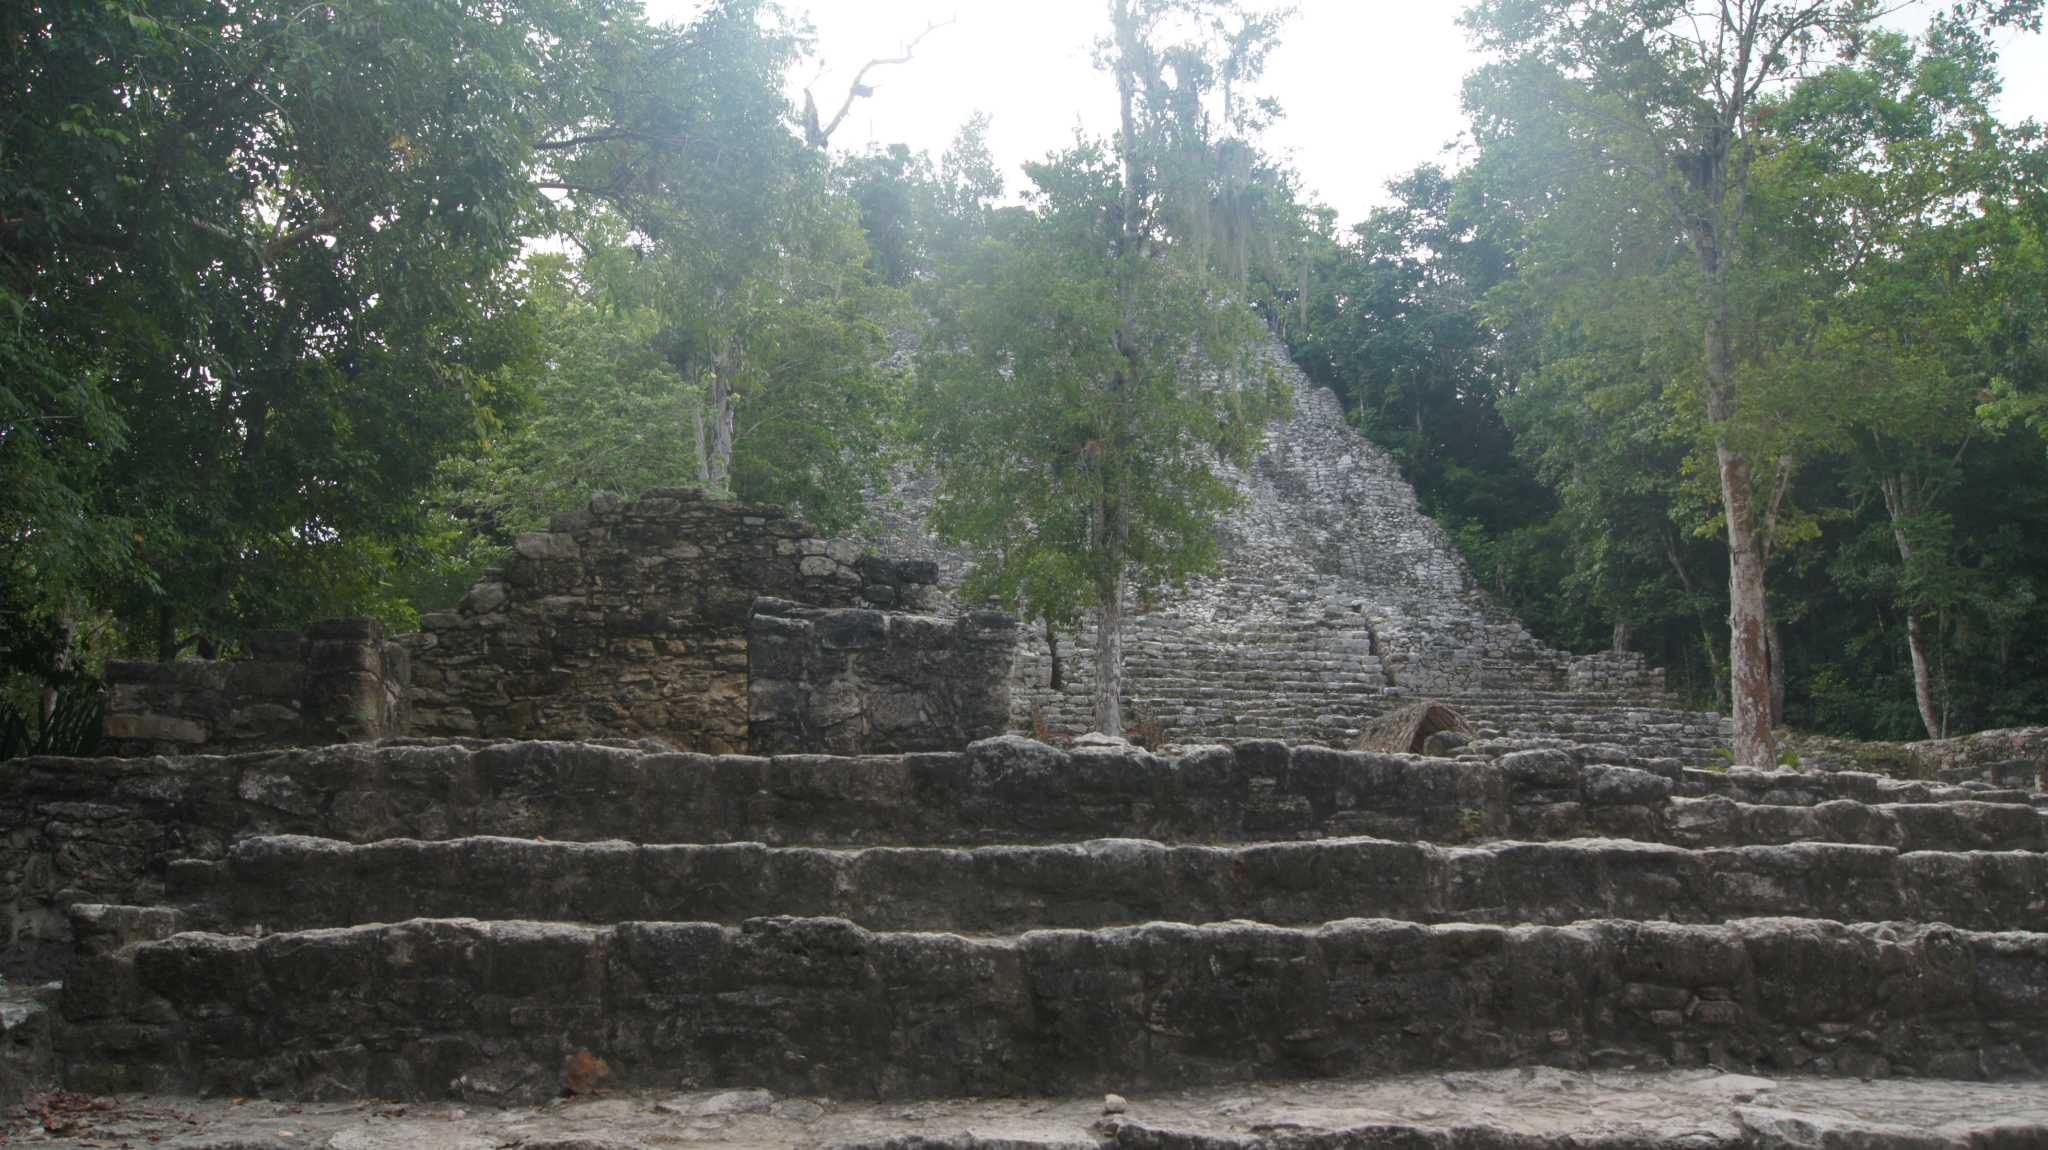 Руины пирамид Коба. История мексиканских пирамид.Coba pyramids ruins - Indian Jones style 